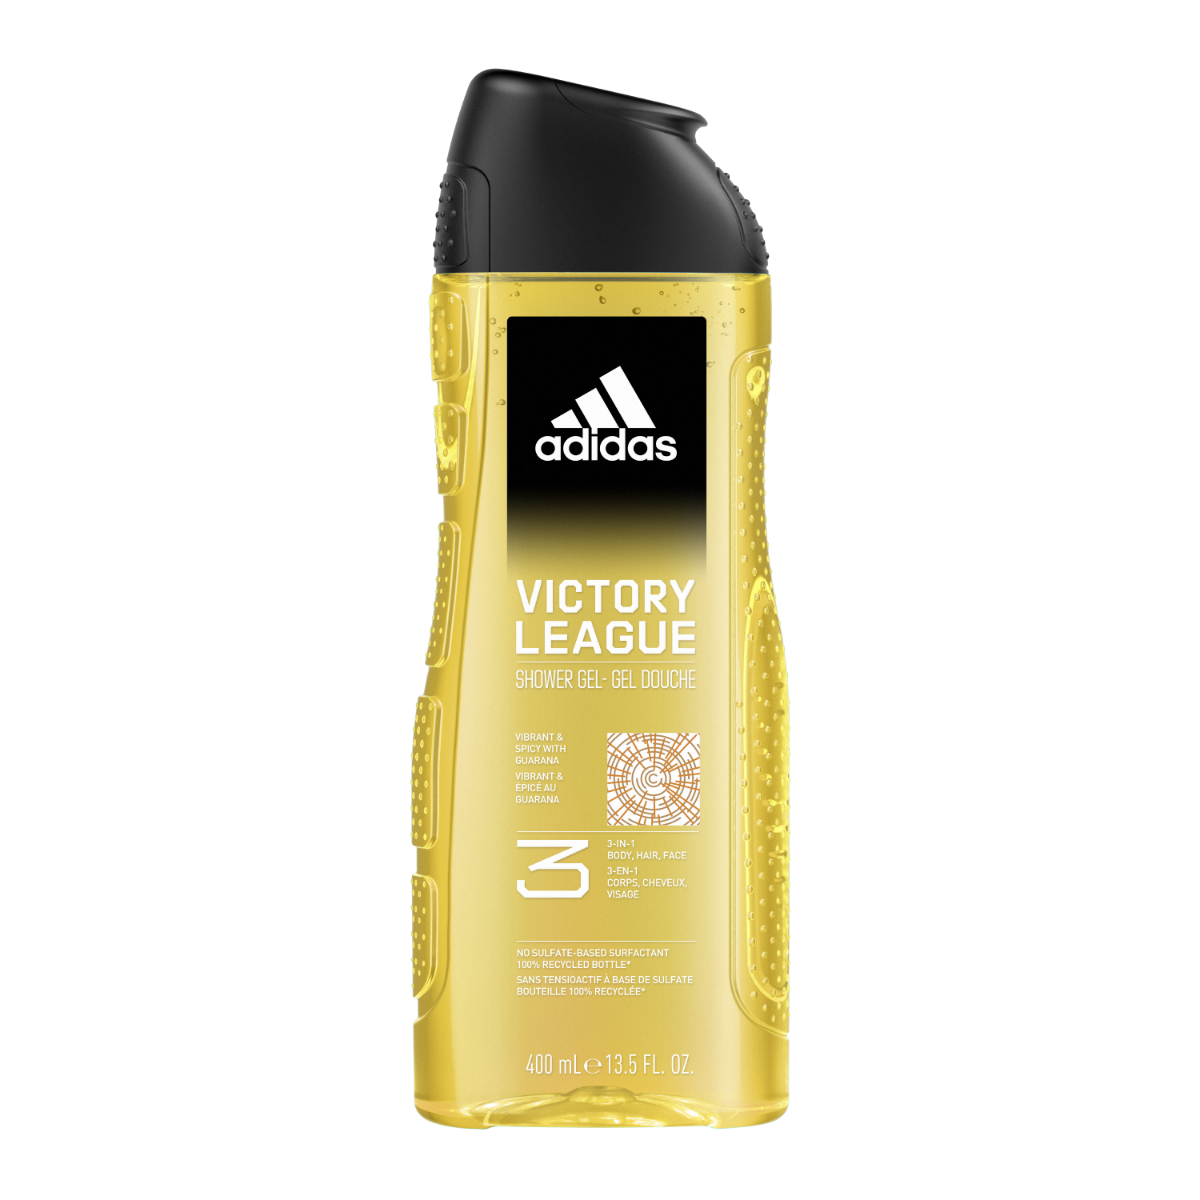 Adidas Victory League гель для душа, 400 ml adidas ice dive гель для душа 400 ml